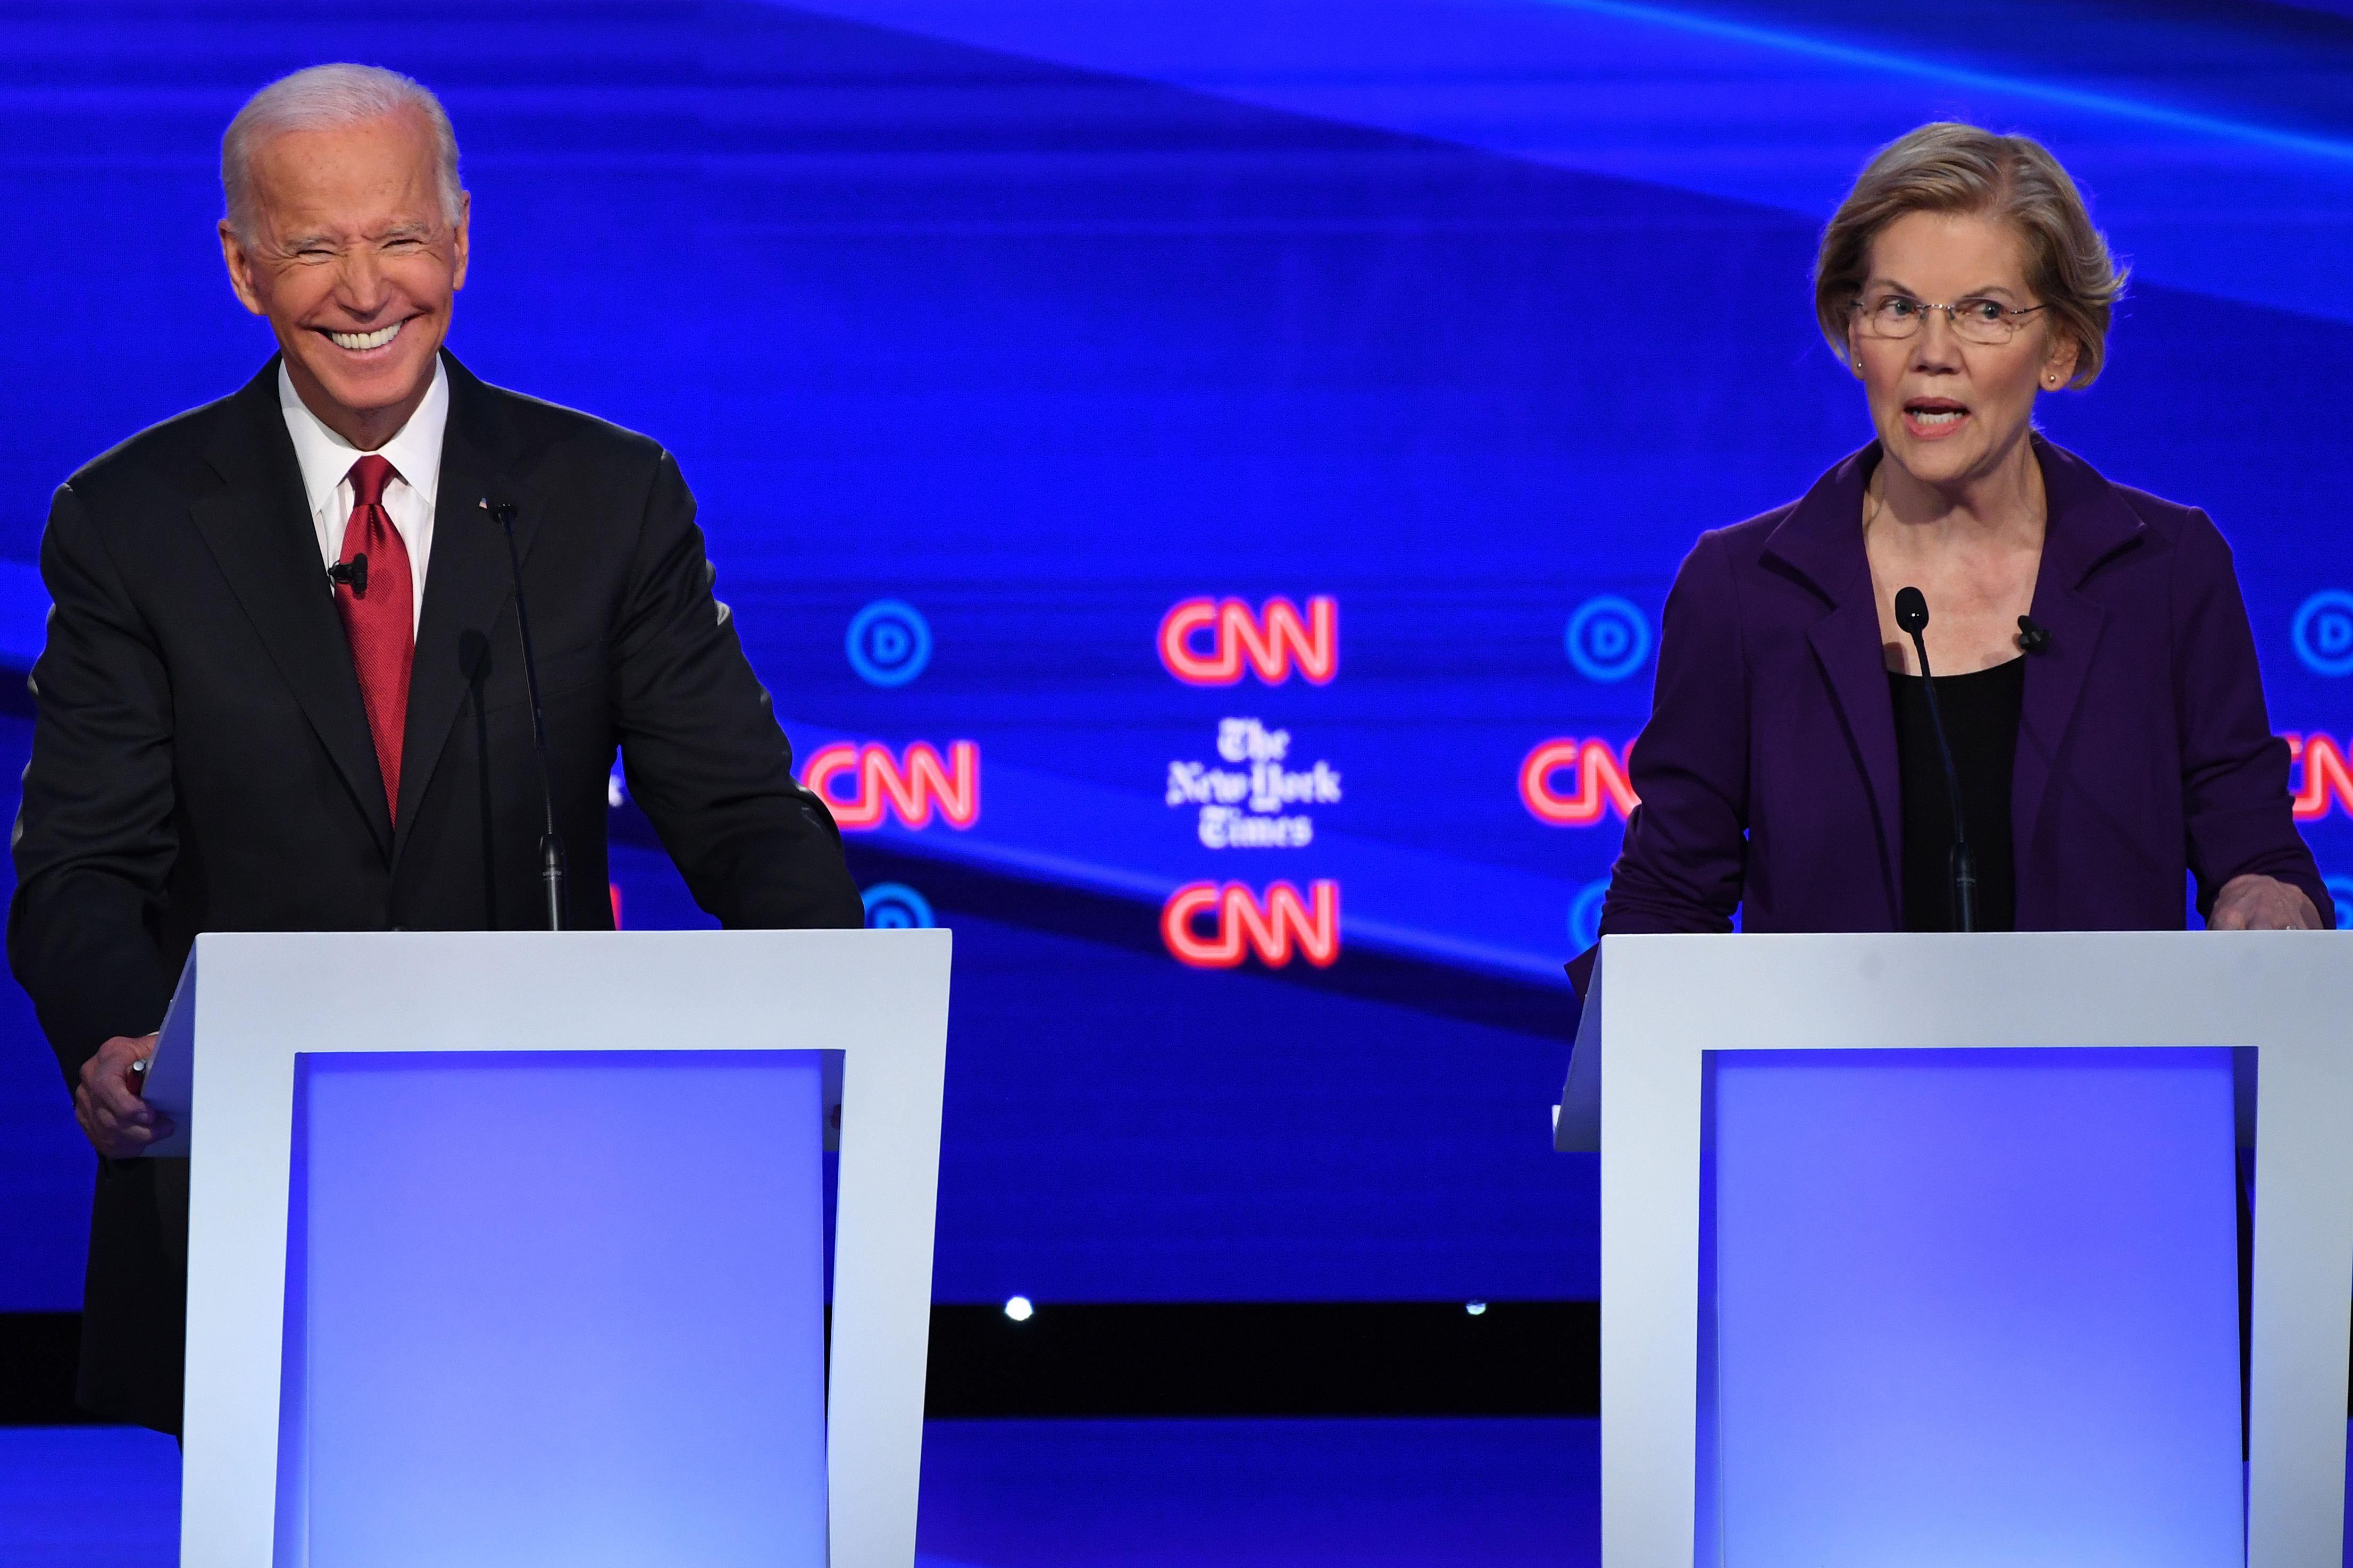 Elizabeth Warren speaks as Joe Biden gestures.